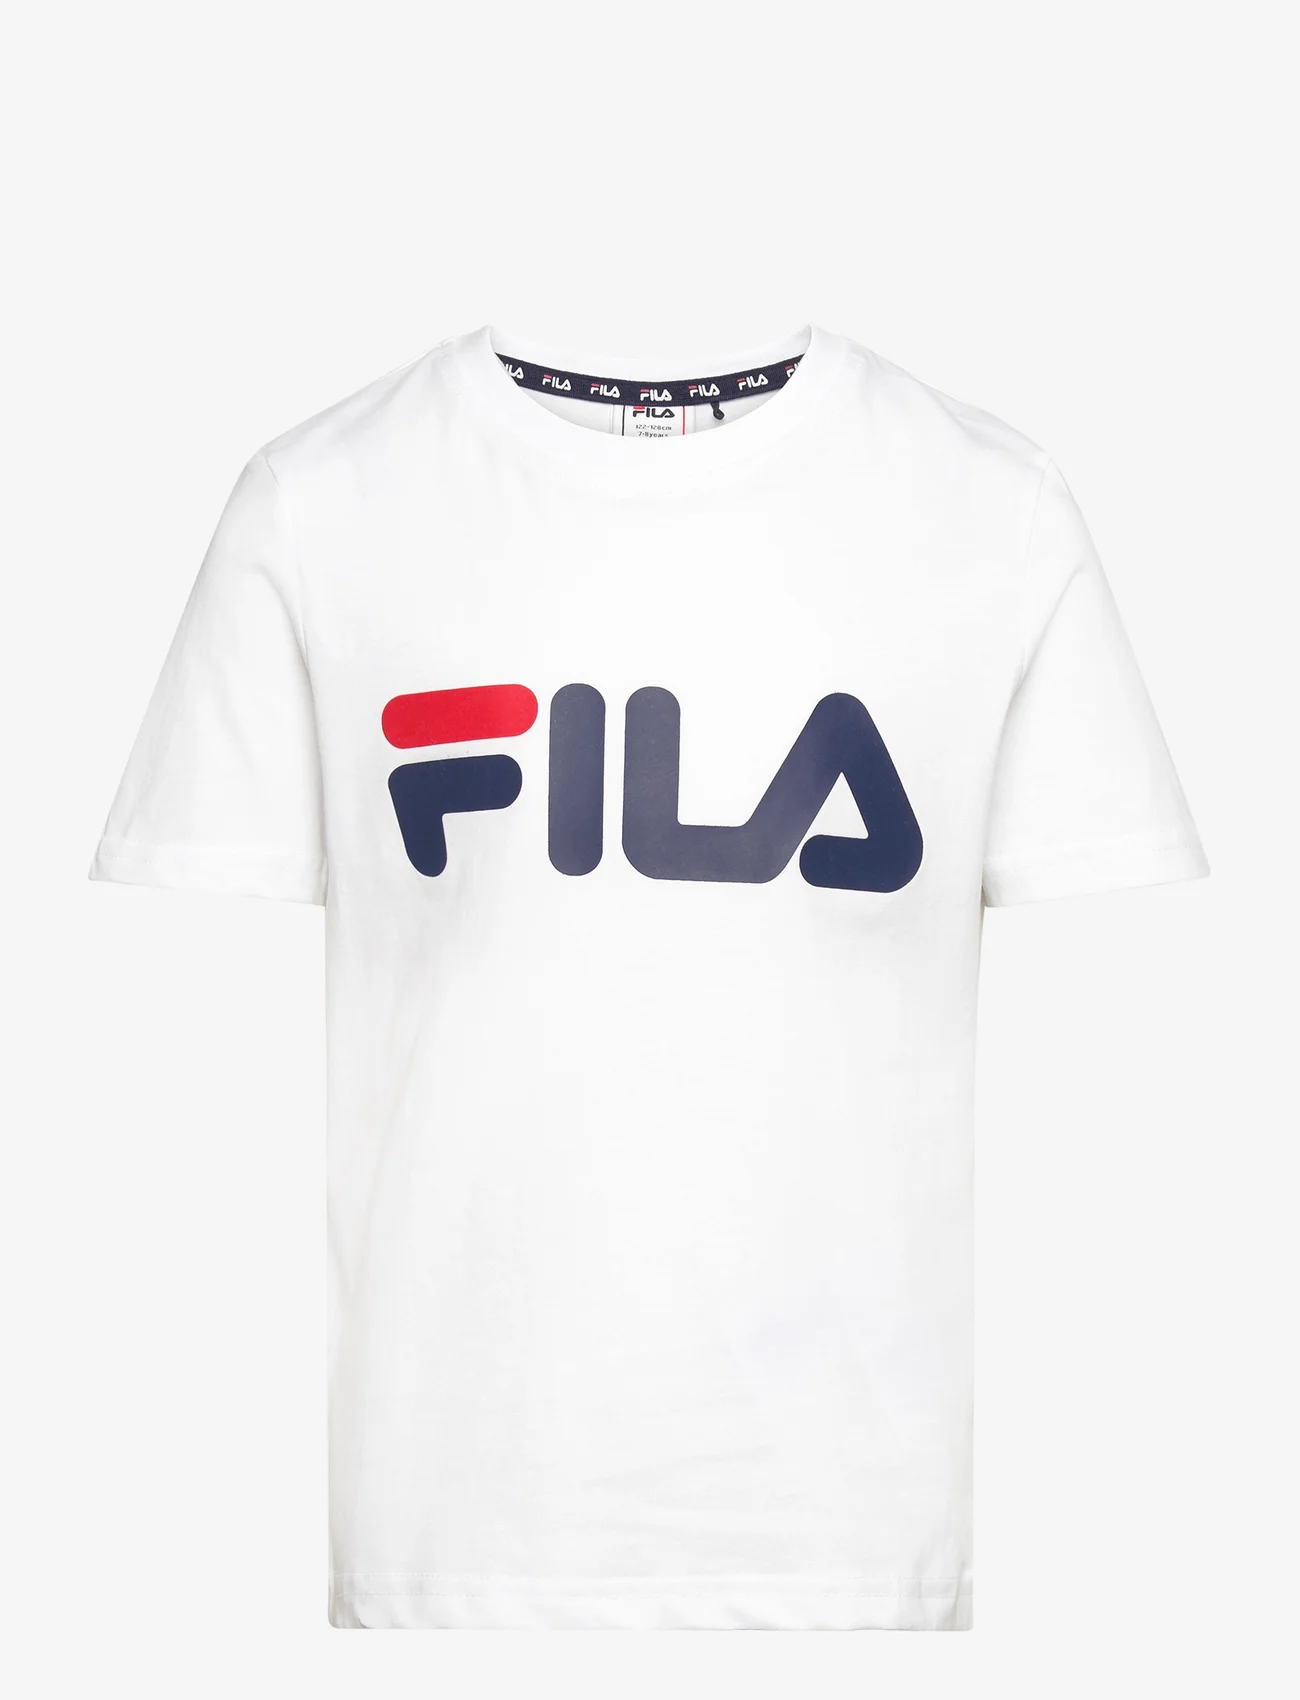 FILA - BAIA MARE classic logo tee - marškinėliai trumpomis rankovėmis - bright white - 0